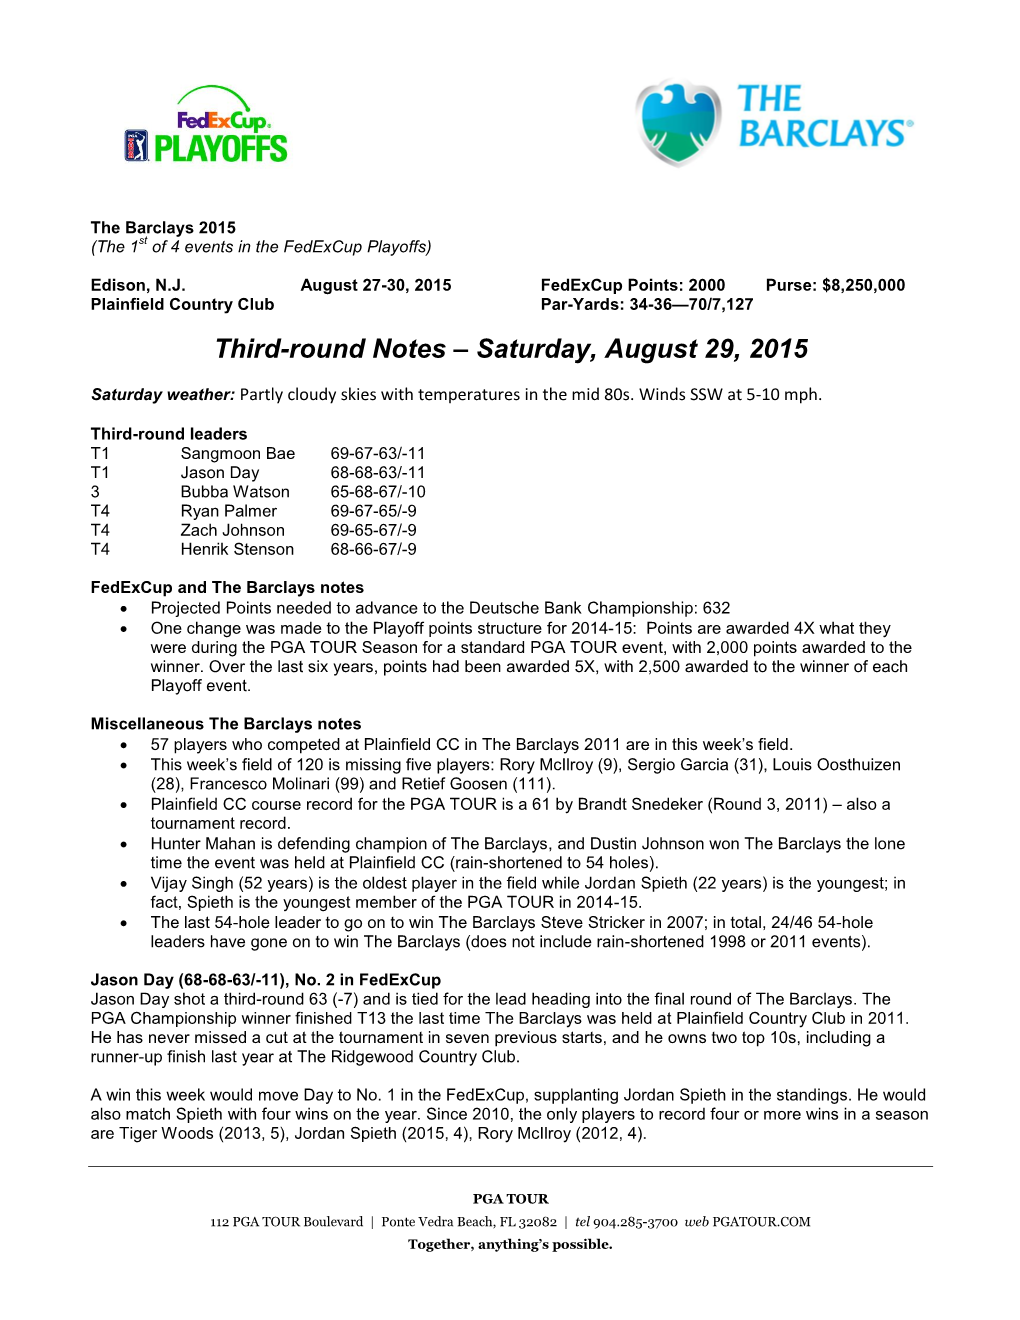 Third-Round Notes – Saturday, August 29, 2015